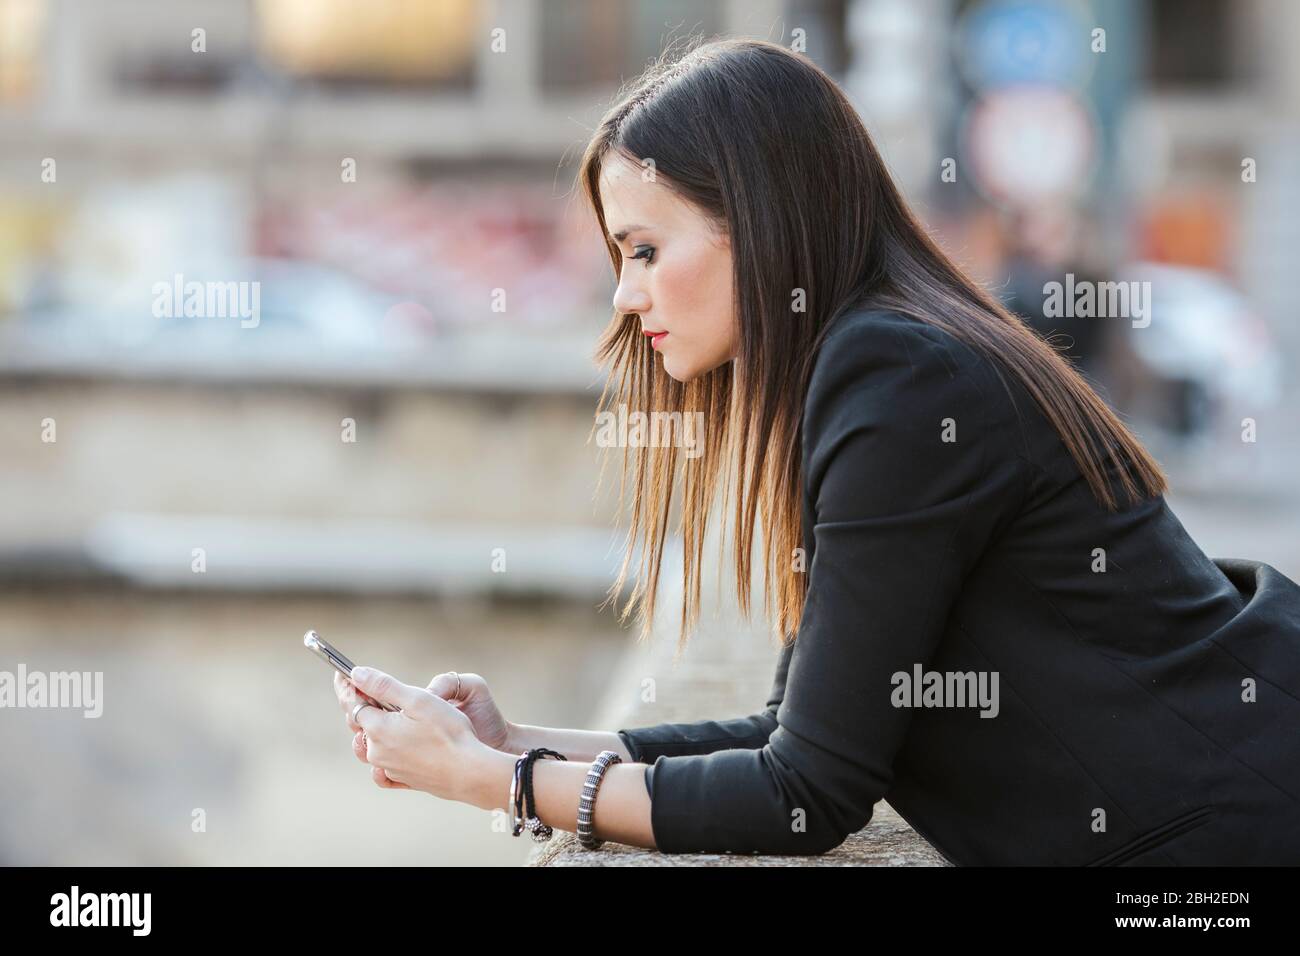 Seriöse Frau, die sich an einer Wand lehnt und auf das Mobiltelefon schaut Stockfoto